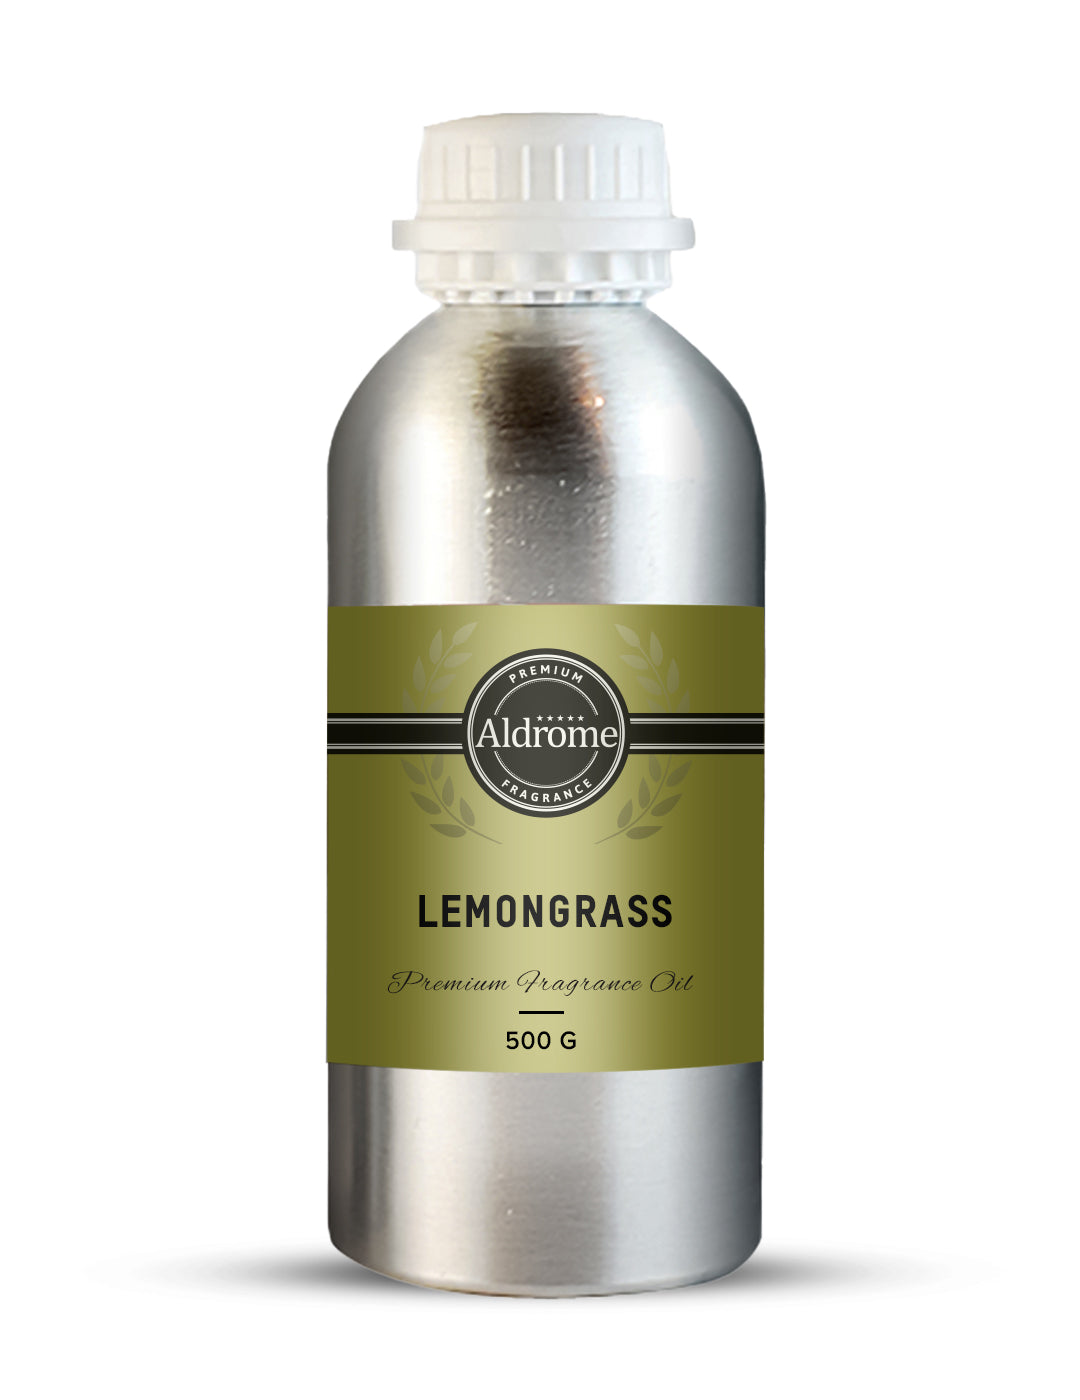 Buy Lemongrass Fragrance Oil - 500 G | Aldrome Premium Fragrance Oil